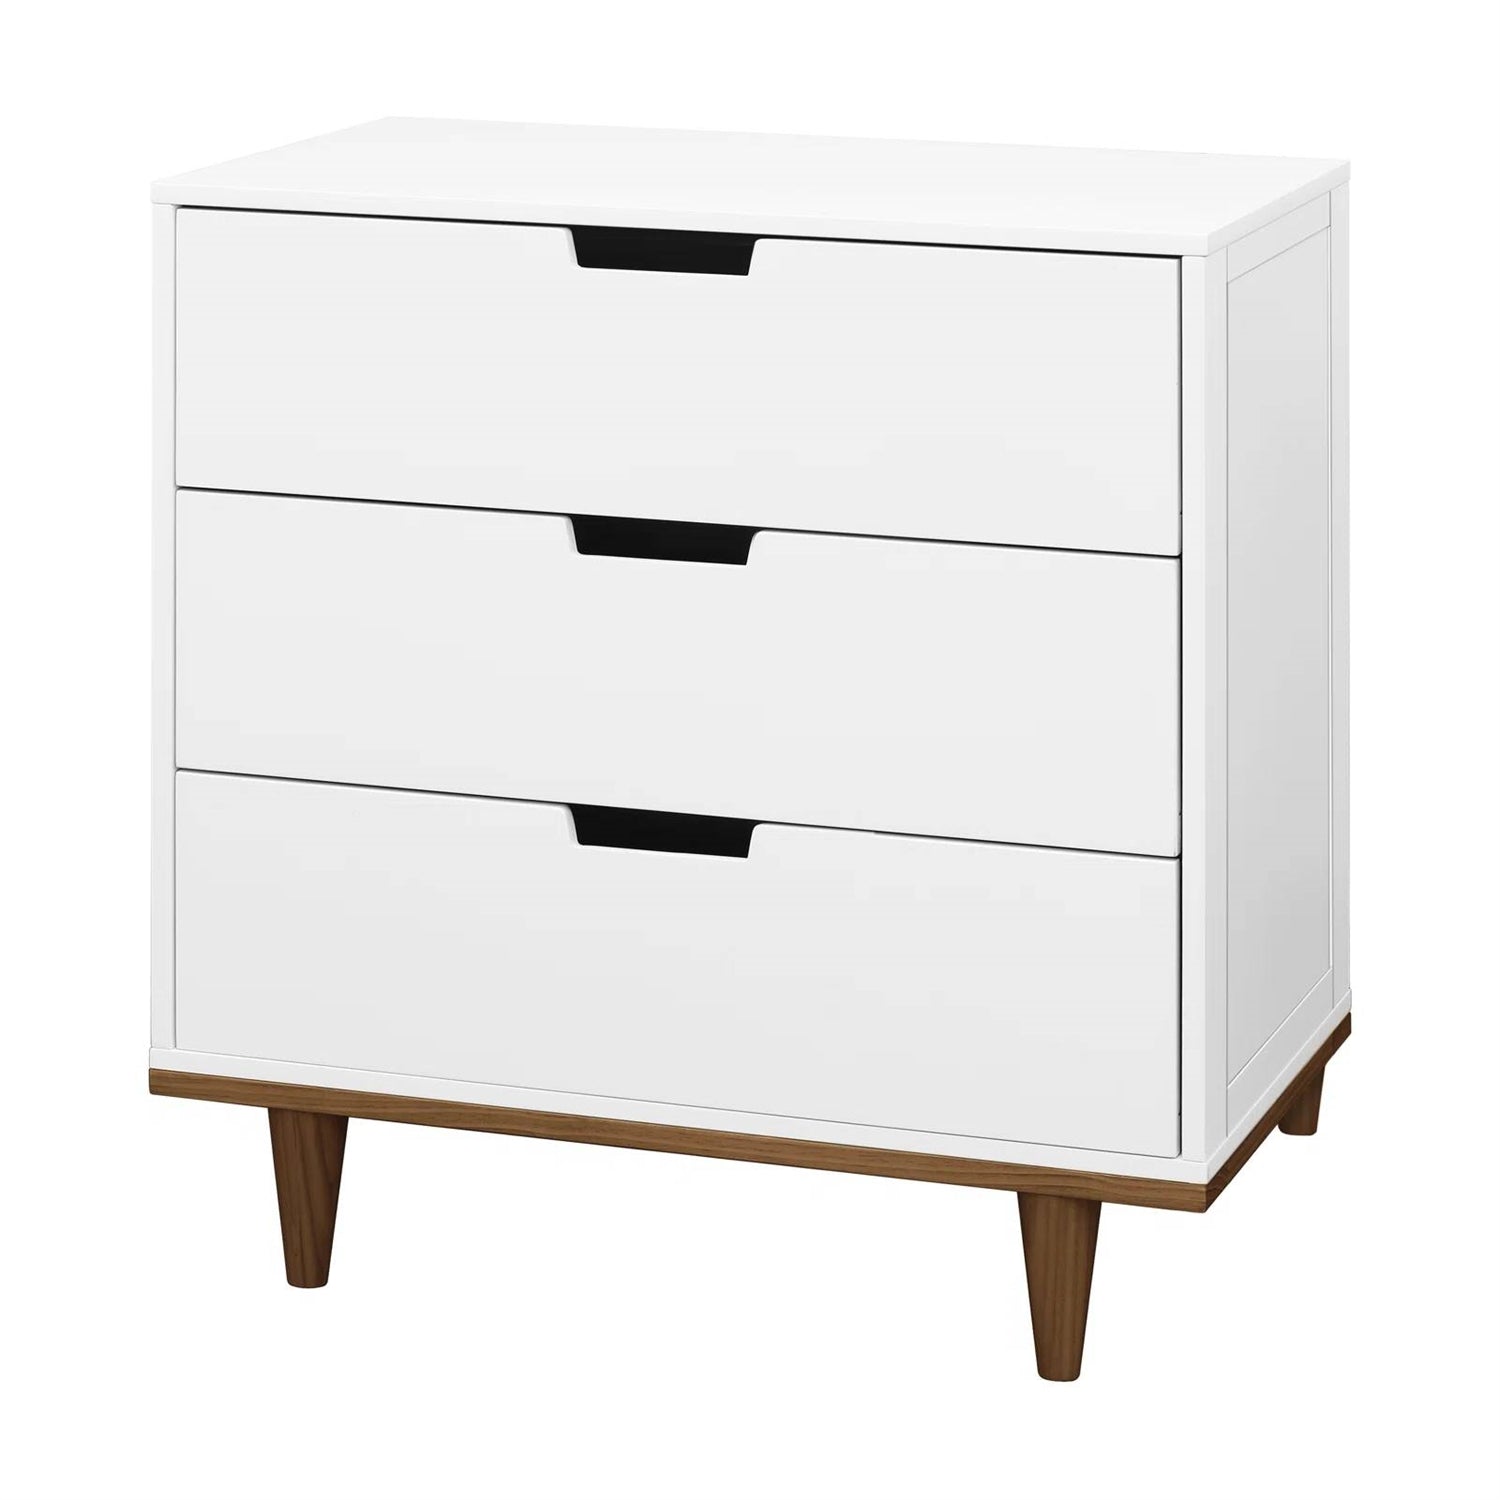 Modern Mid-Century Style 3-Drawer Dresser Chest in White Walnut Wood Finish